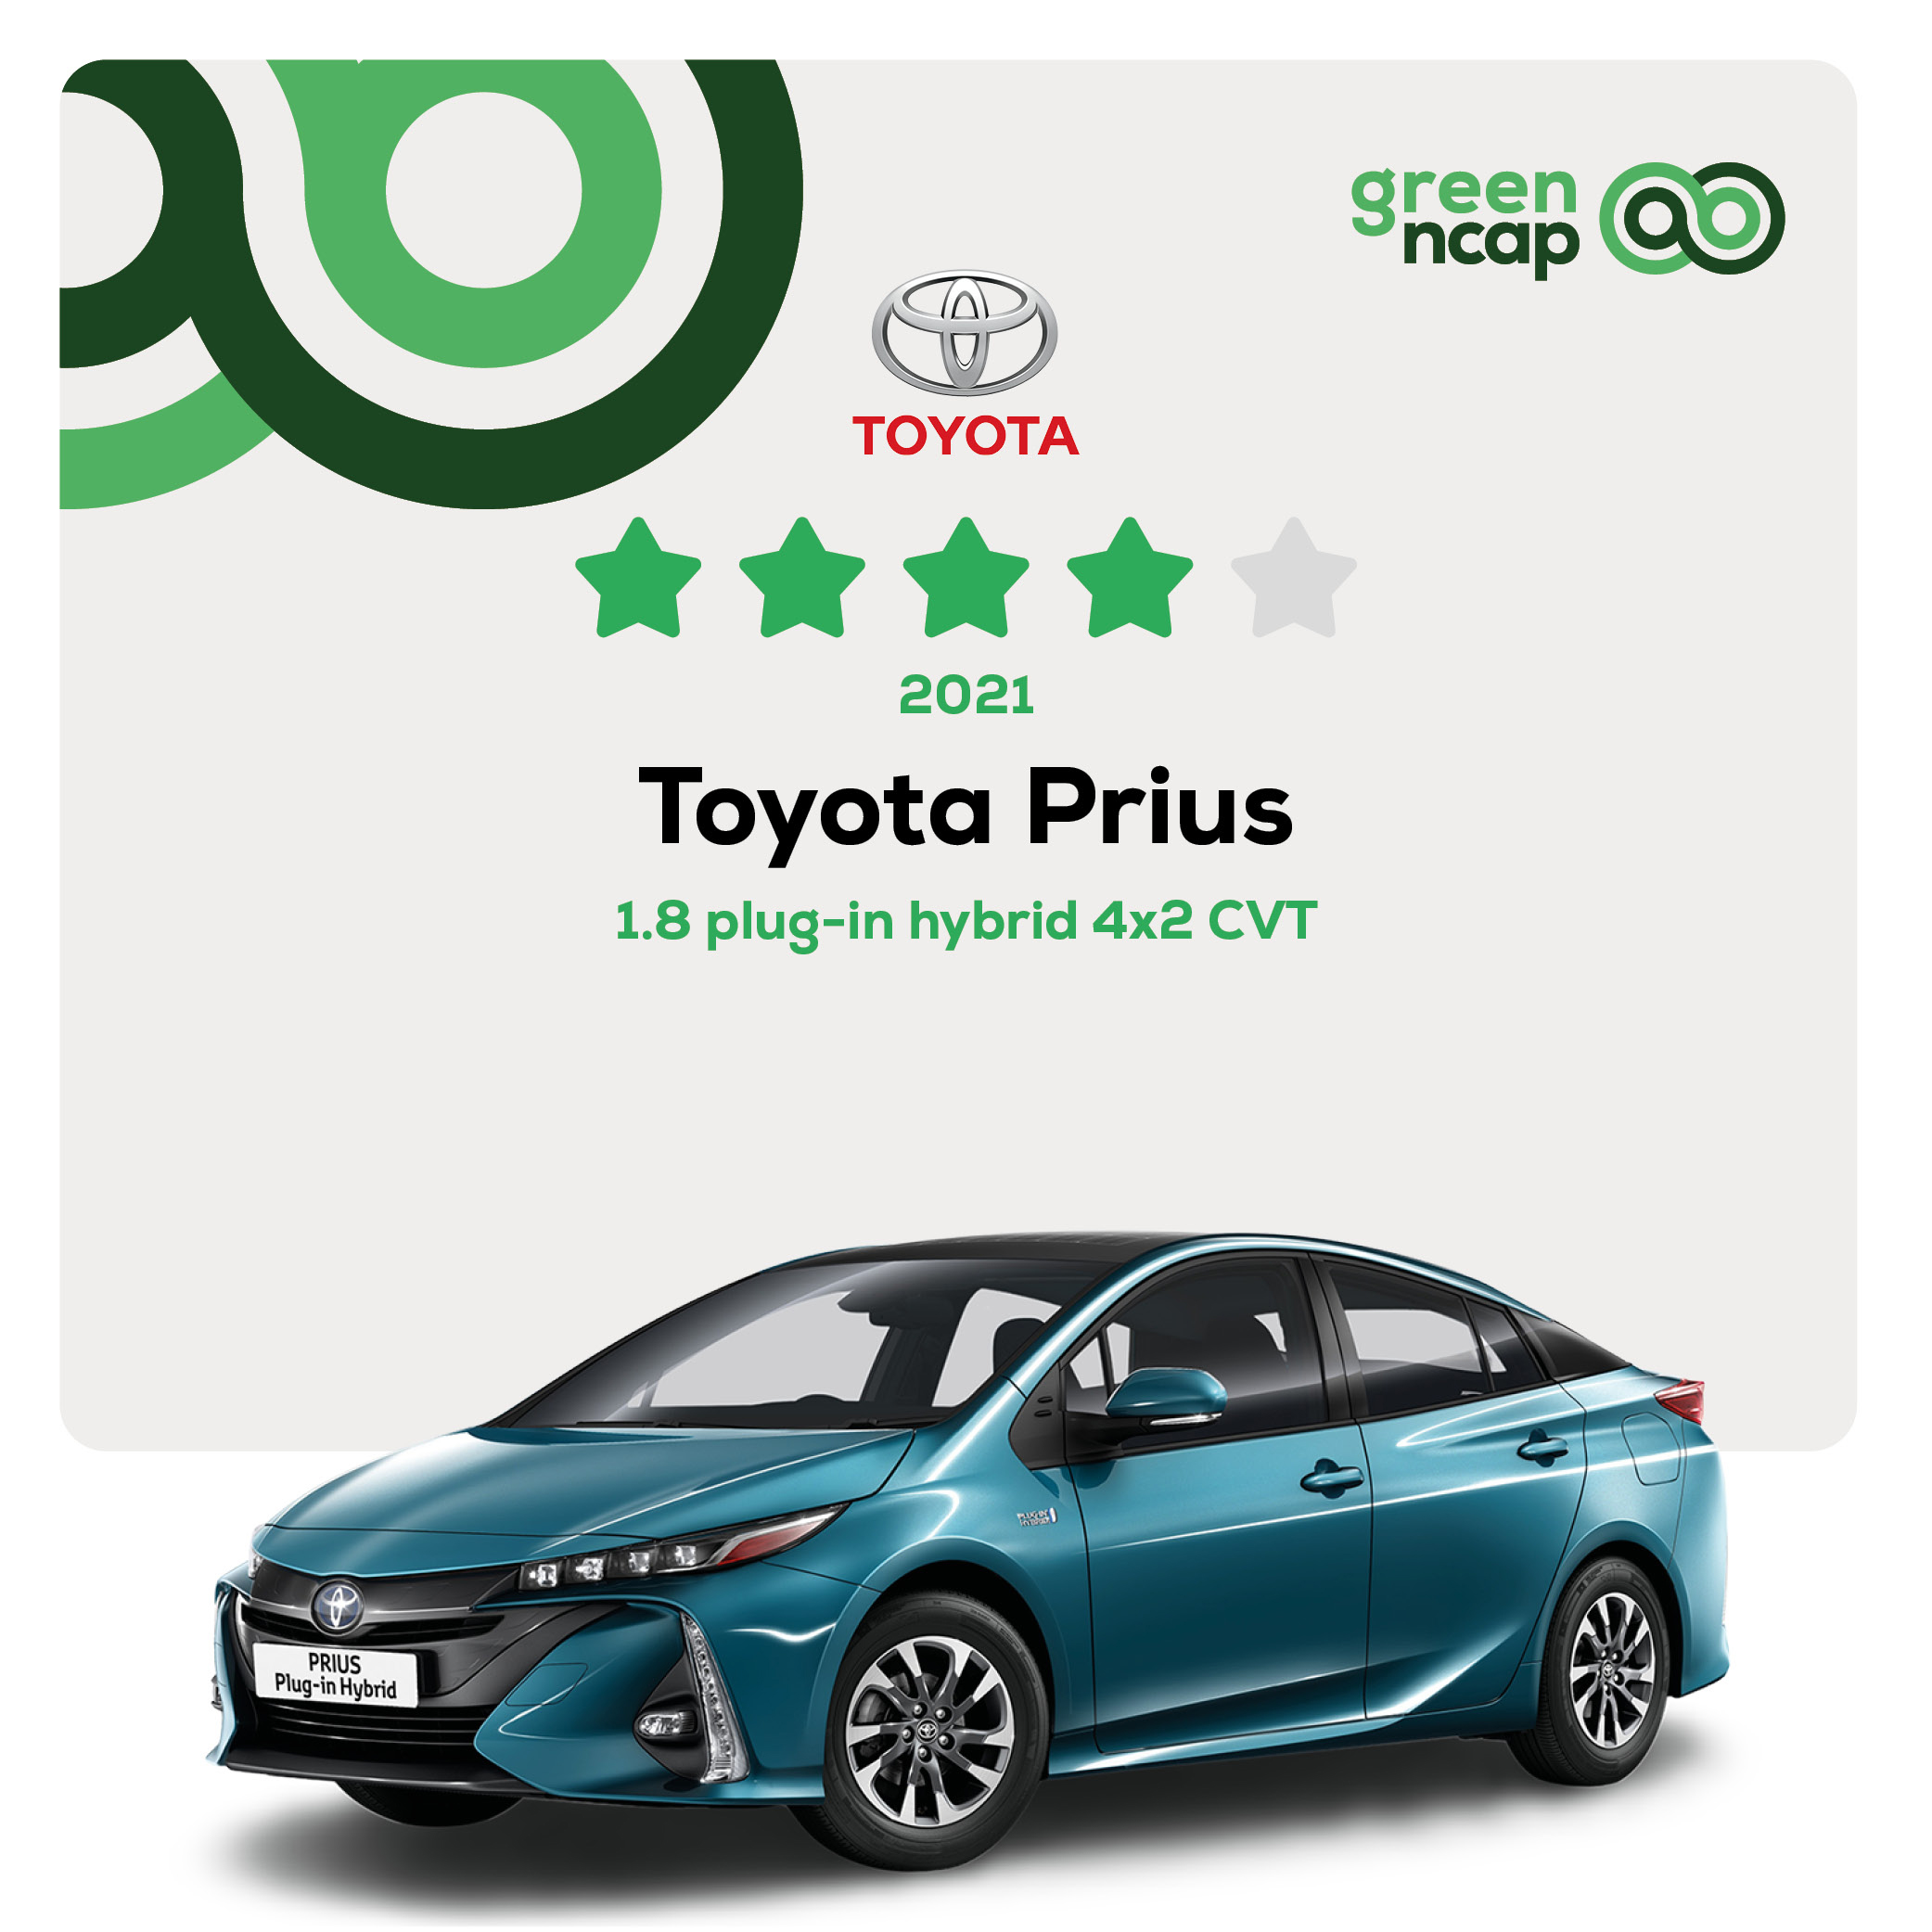 Toyota Prius - Risultati NCAP verdi febbraio 2021 - 4 stelle